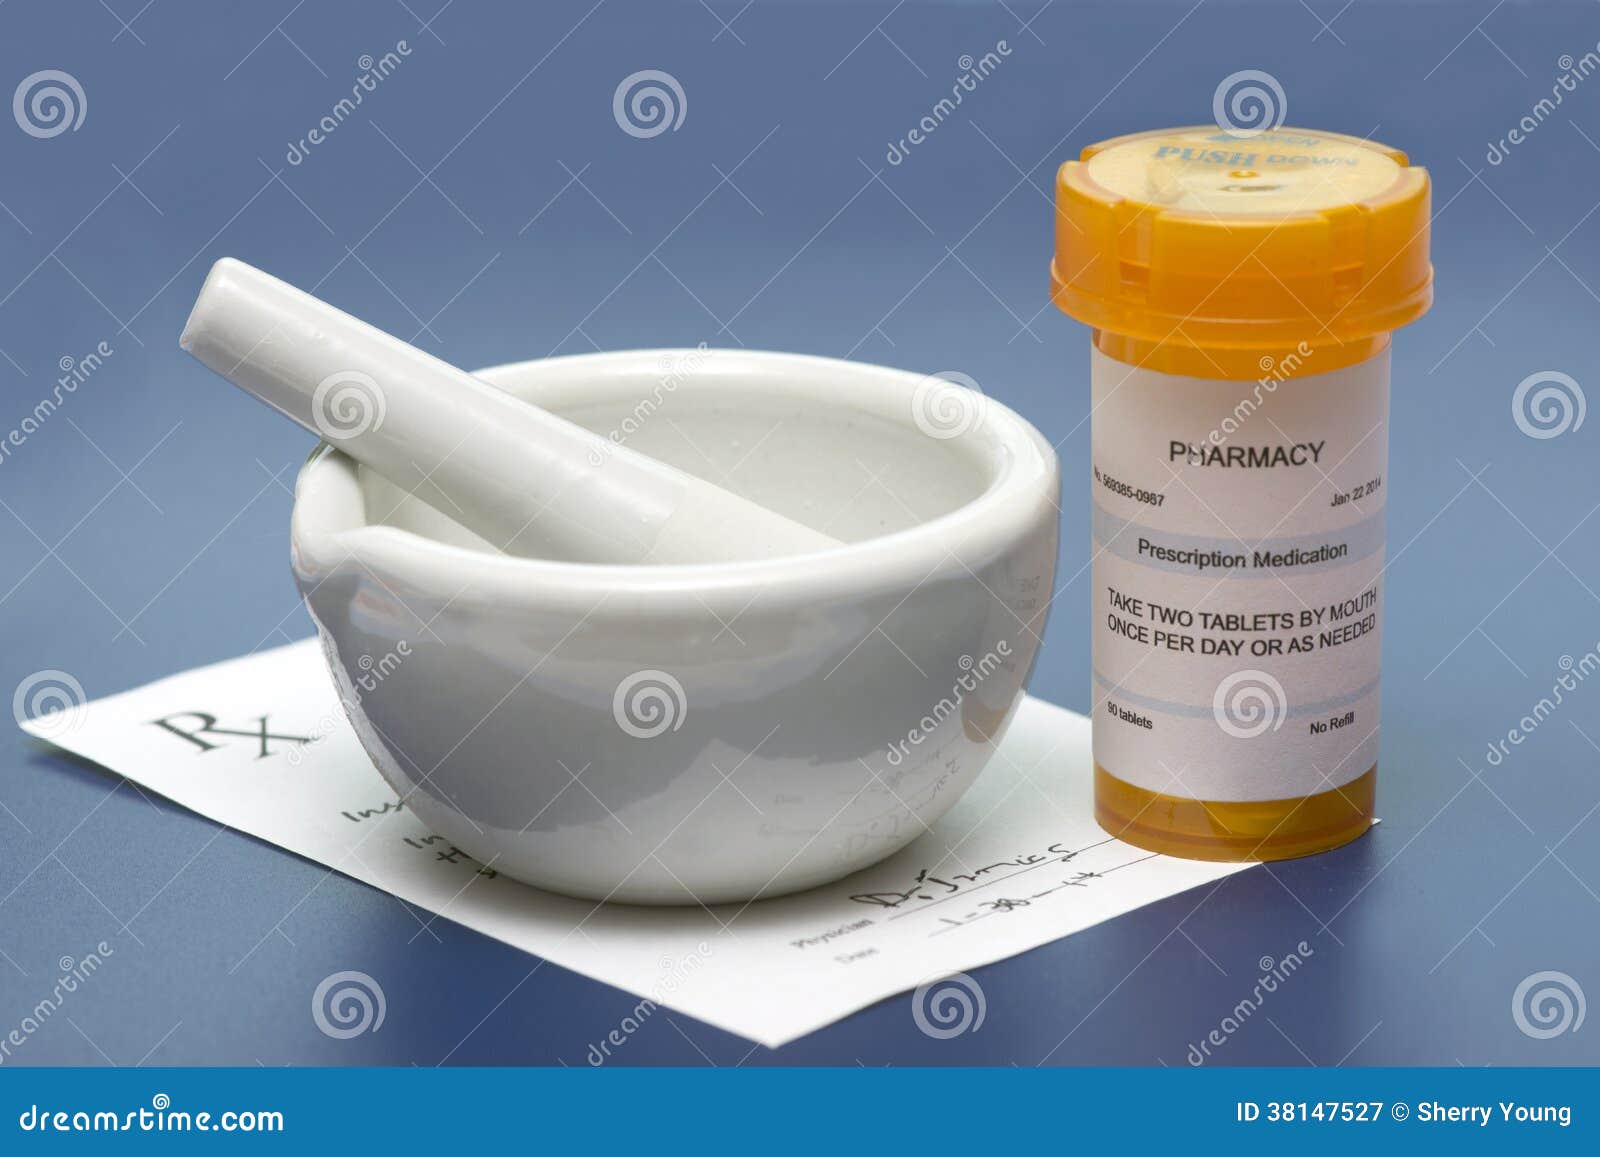 mortar and pestle prescription